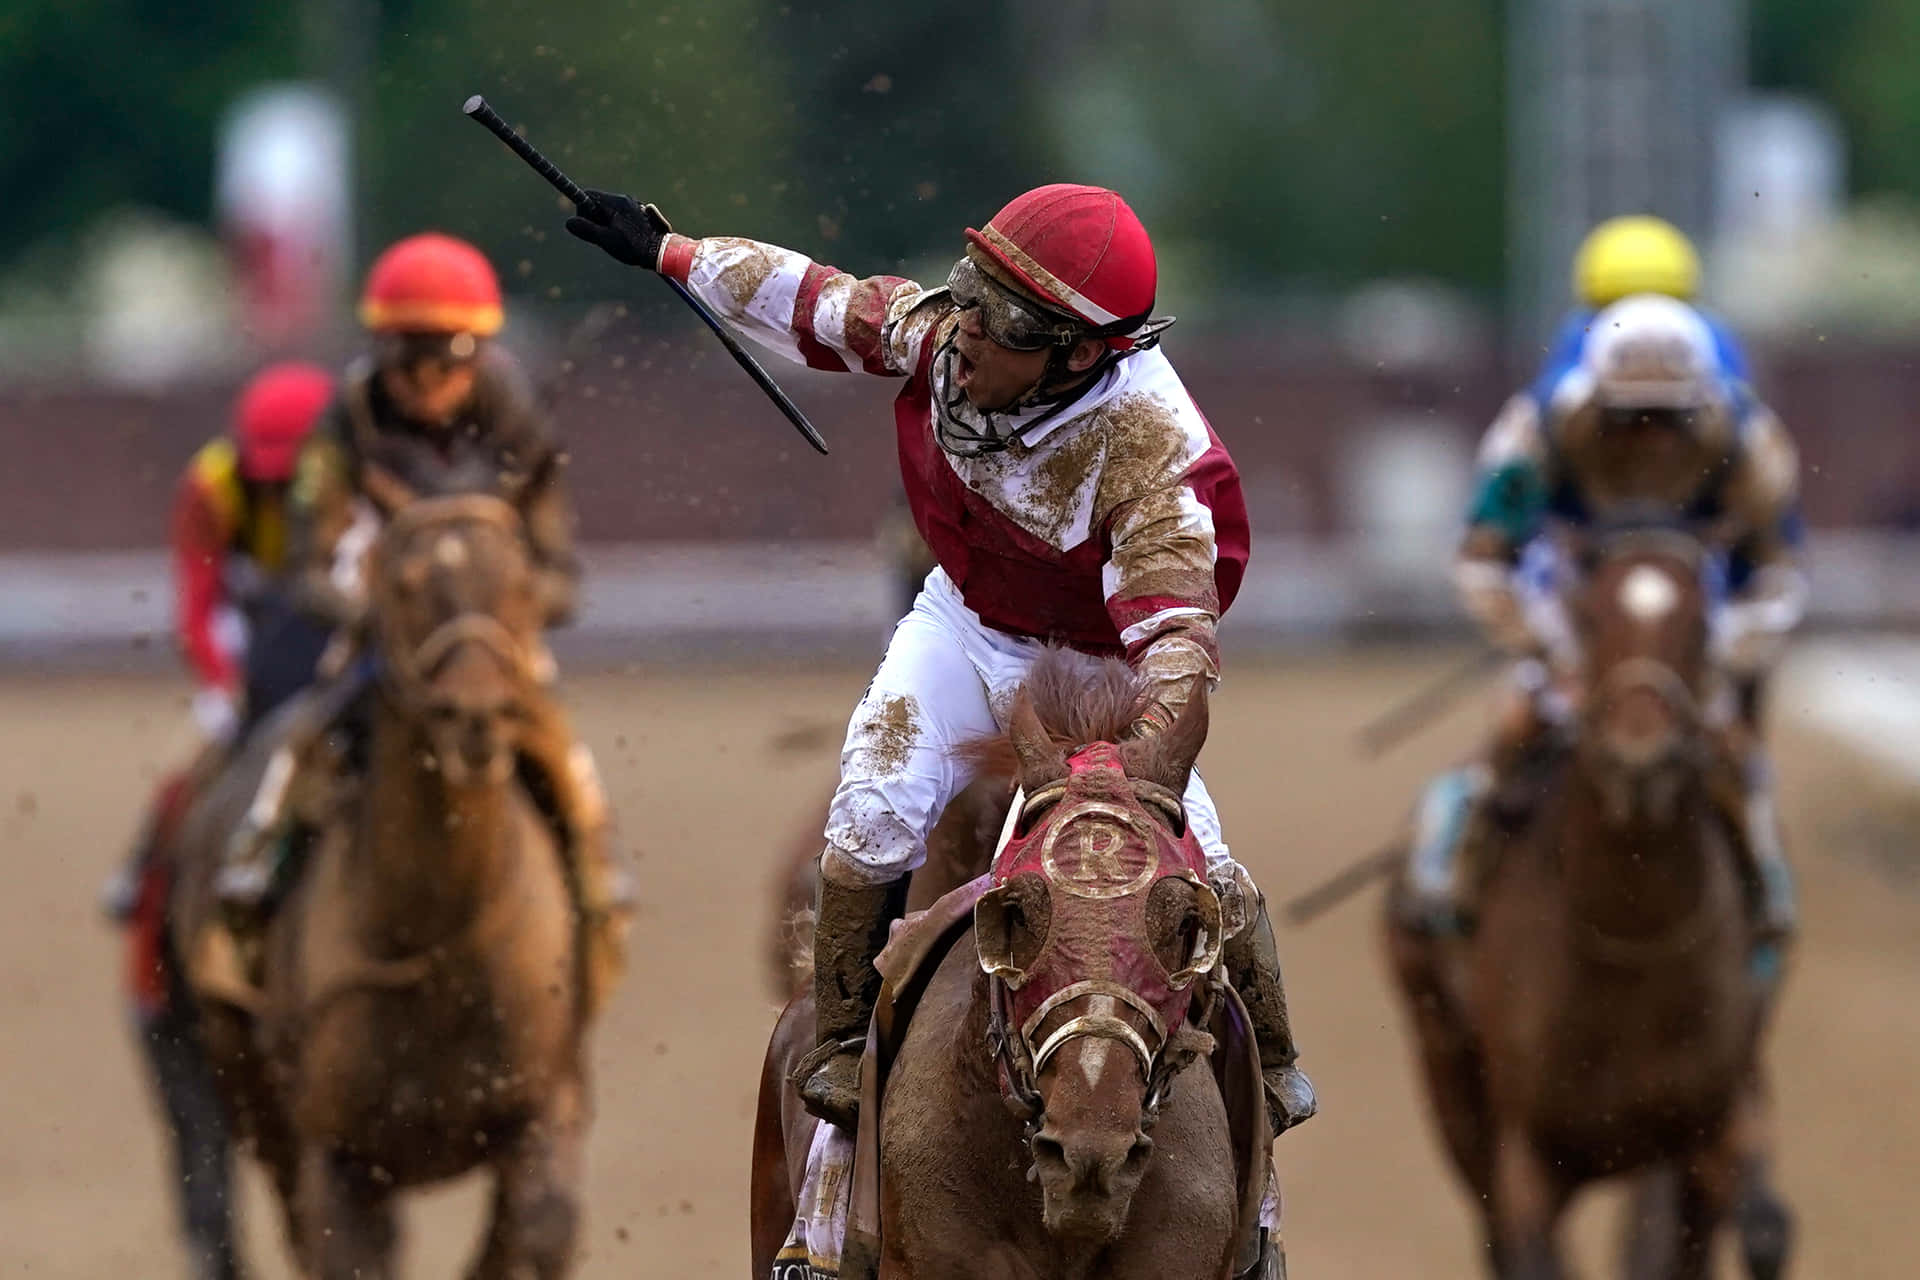 = En Jockey kører en hest i et løb